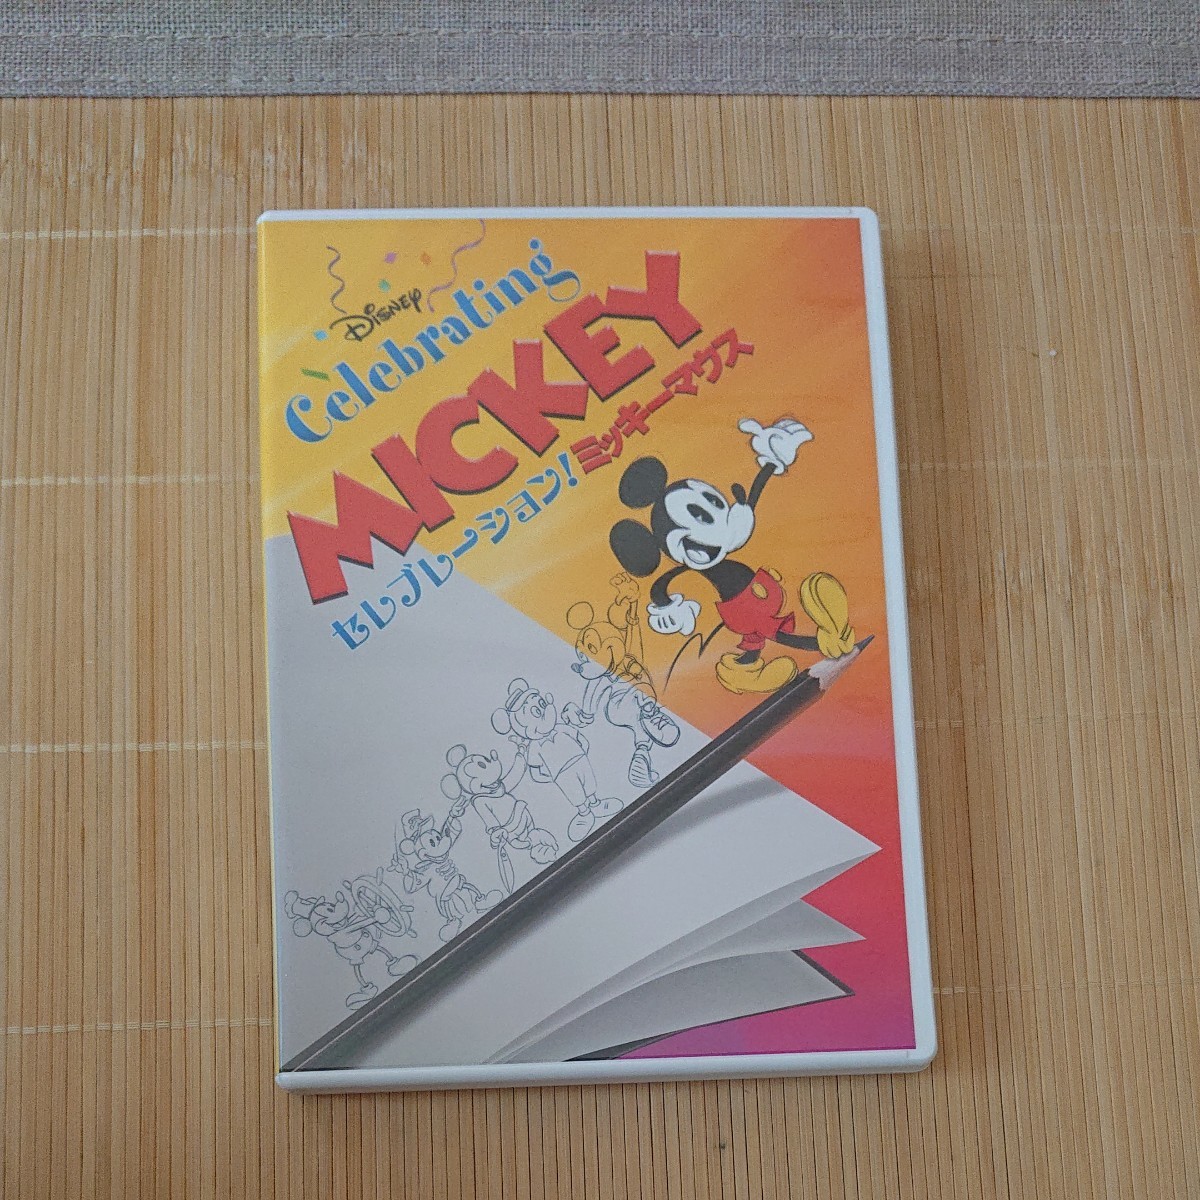 ミッキーマウス DVD